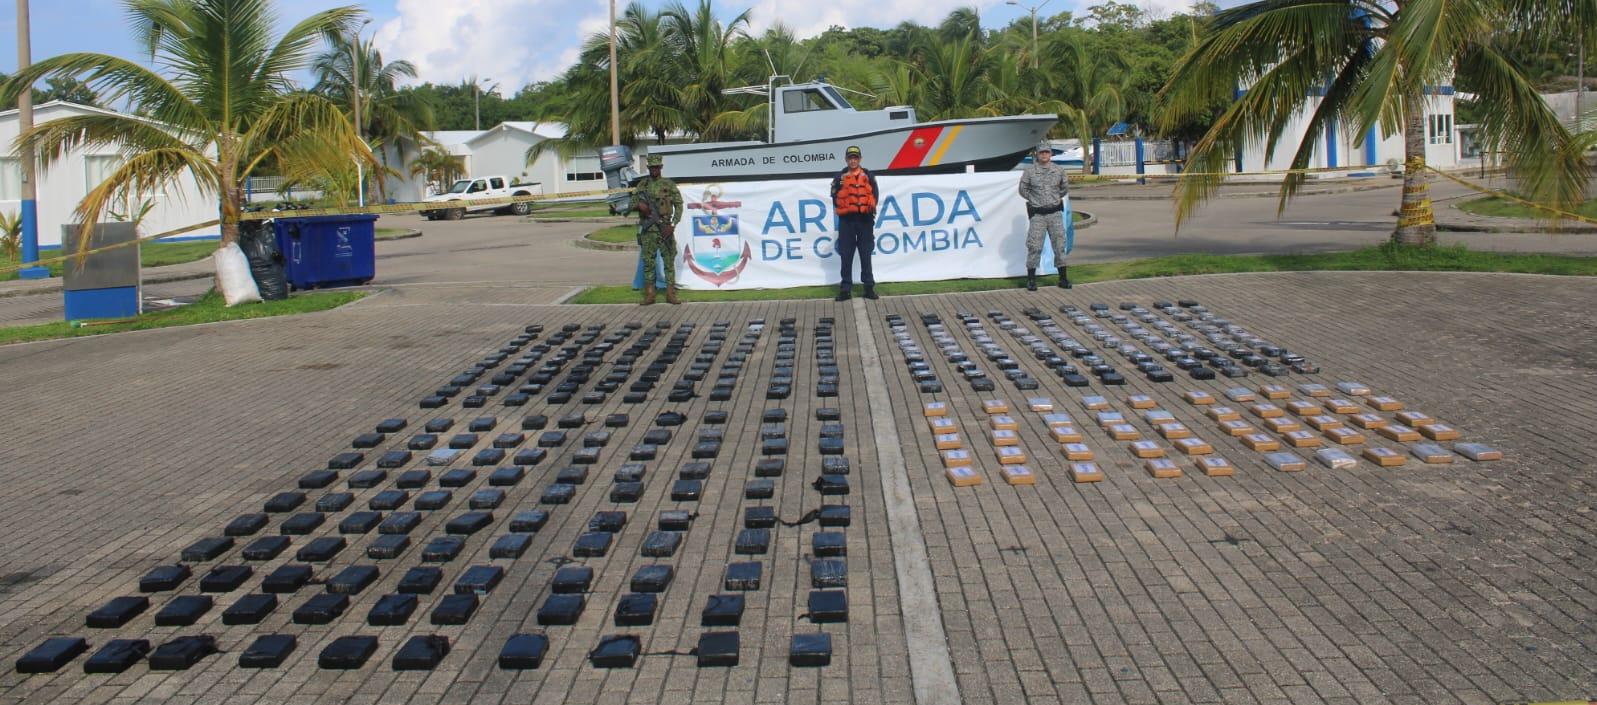 Uno de los más recientes golpes contra las drogas lo dio la Armada al decomisar cocaína en aguas del Mar Caribe avaluada en 11 millones de dóiares